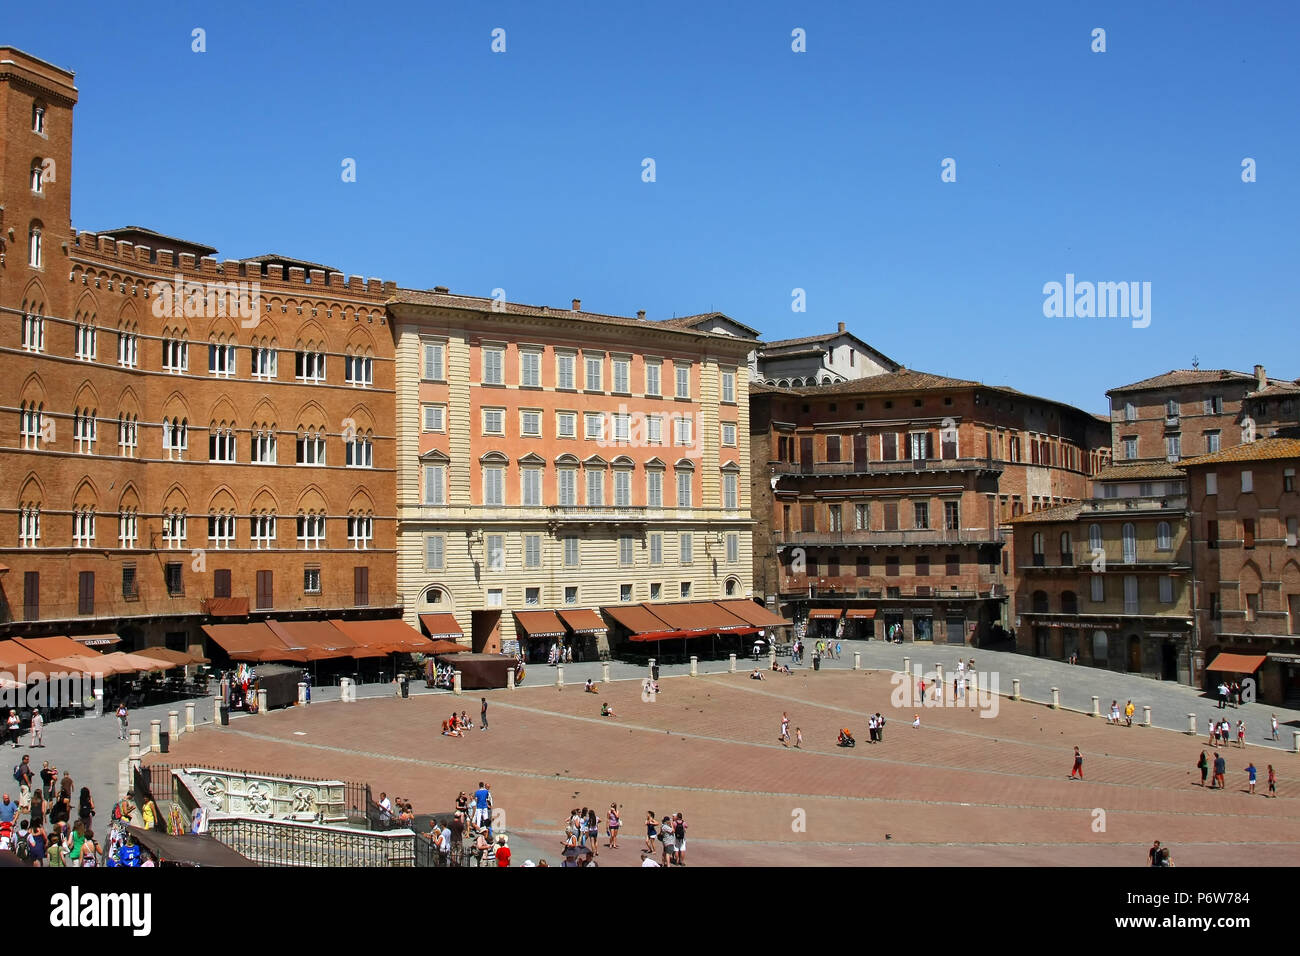 SIENA, ITALIEN - Juli 05, 2008: Piazza del Campo ist der Hauptplatz von Siena Stockfoto